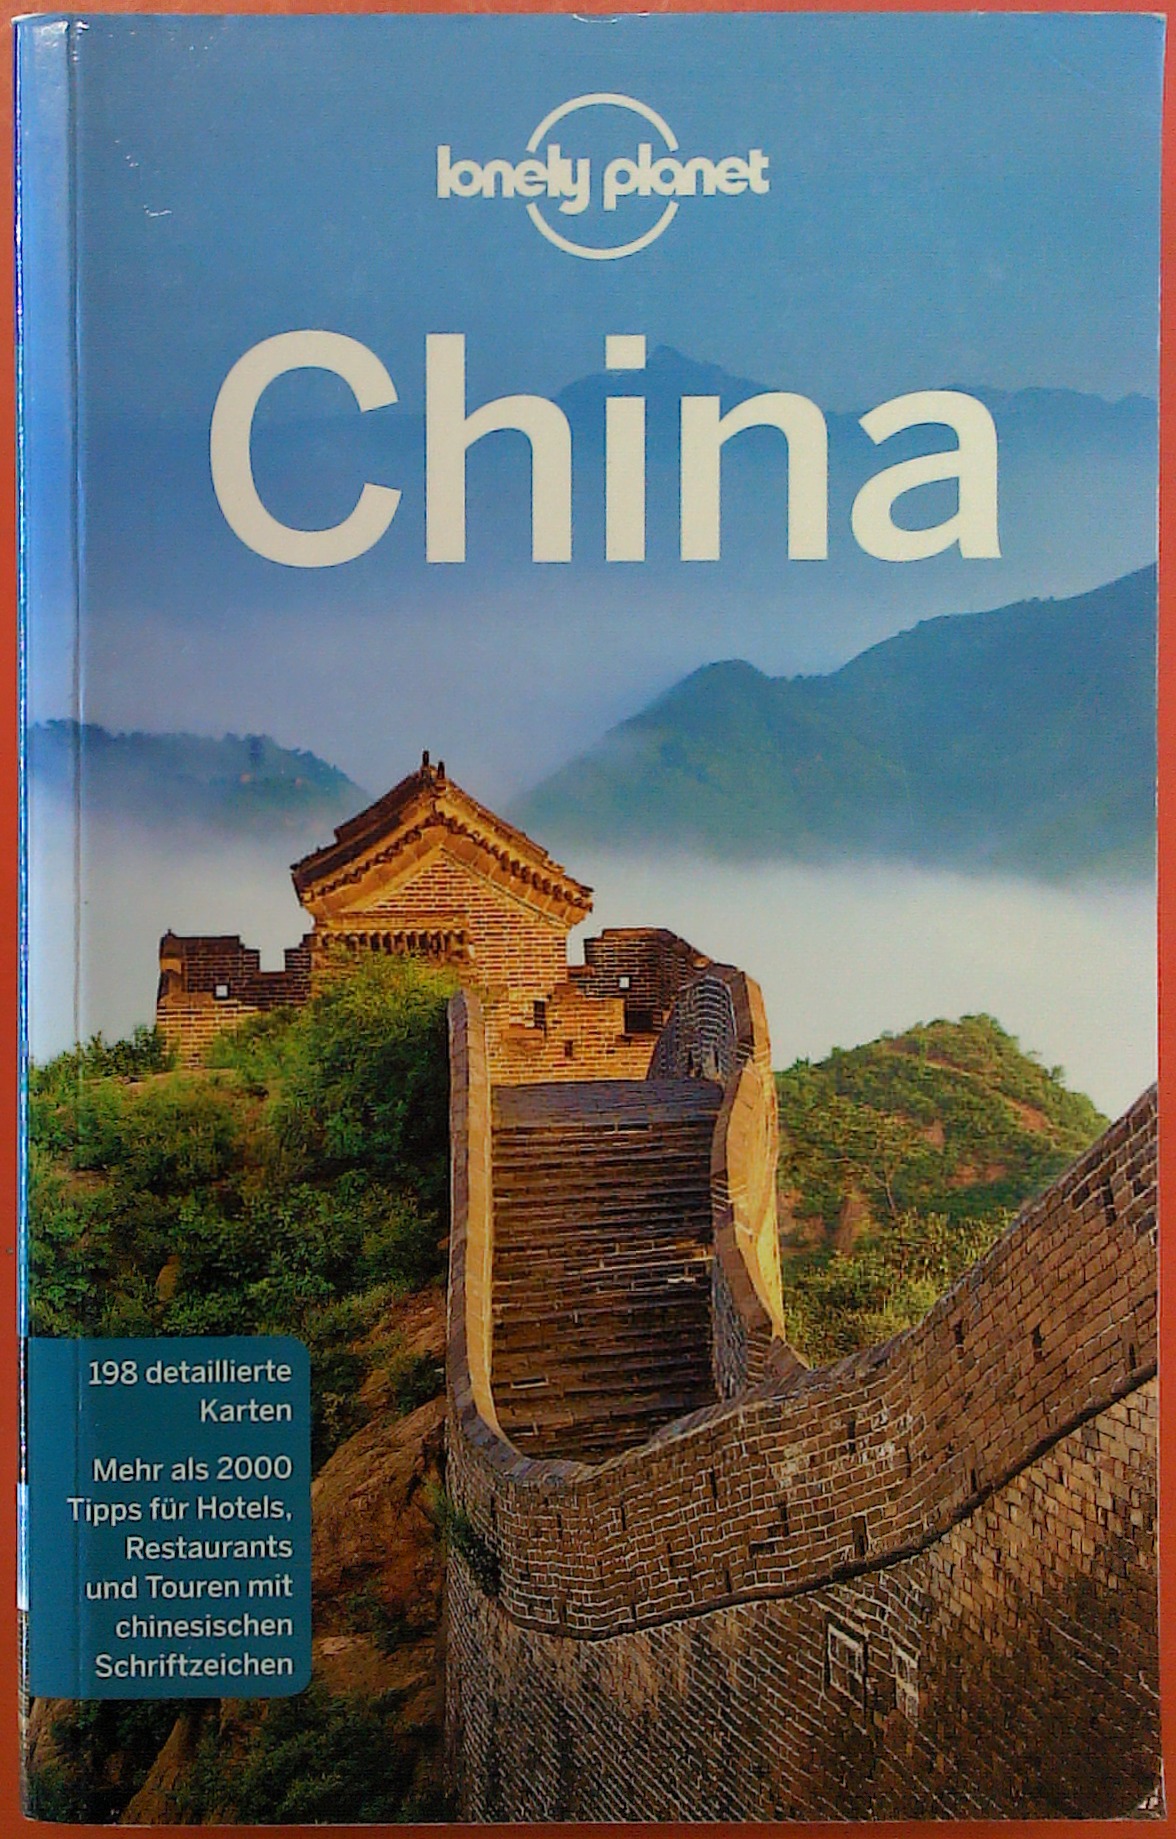 Lonely Planet Reiseführer China - 5. deutsche Auflage - Damian Harper / Piera Chen / Chung Wah Chow / Megan Eaves / u.v.a.